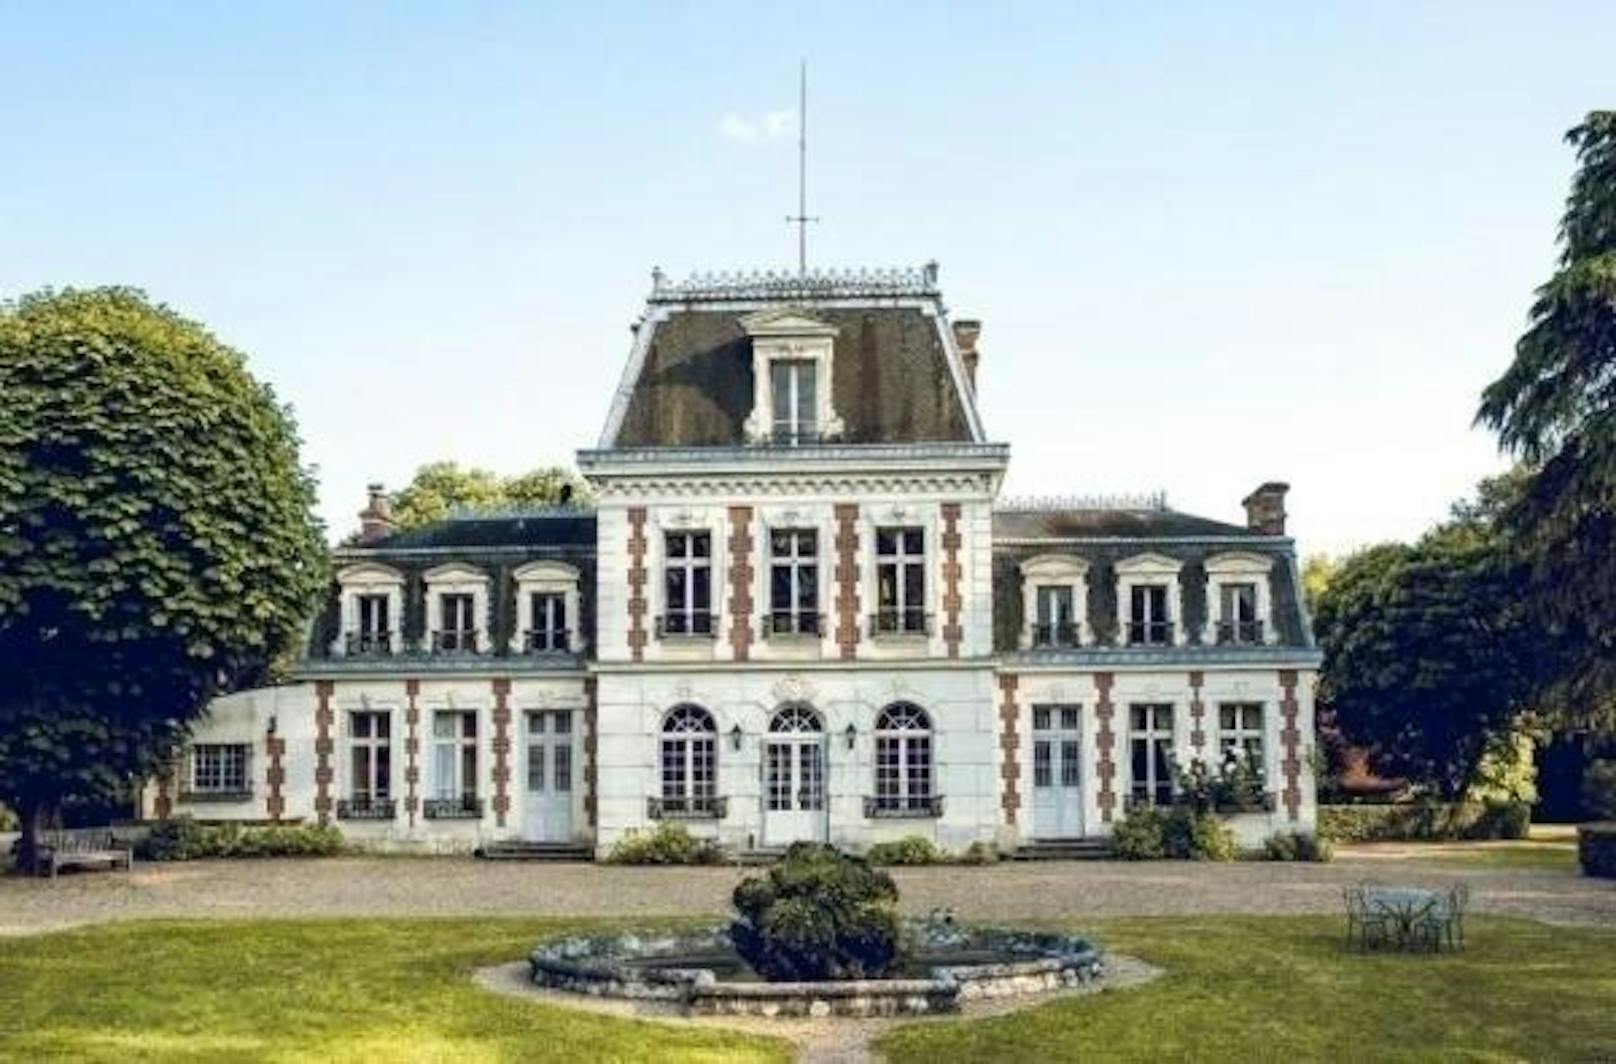 <b>Château de la Chauverie, Saint-Georges-sur-Cher, Frankreich</b>
Rund zwei Autostunden von Paris entfernt steht dieses zauberhafte Schlösschen in der Loire-Region, die für ihre zahlreichen Burgen bekannt ist.